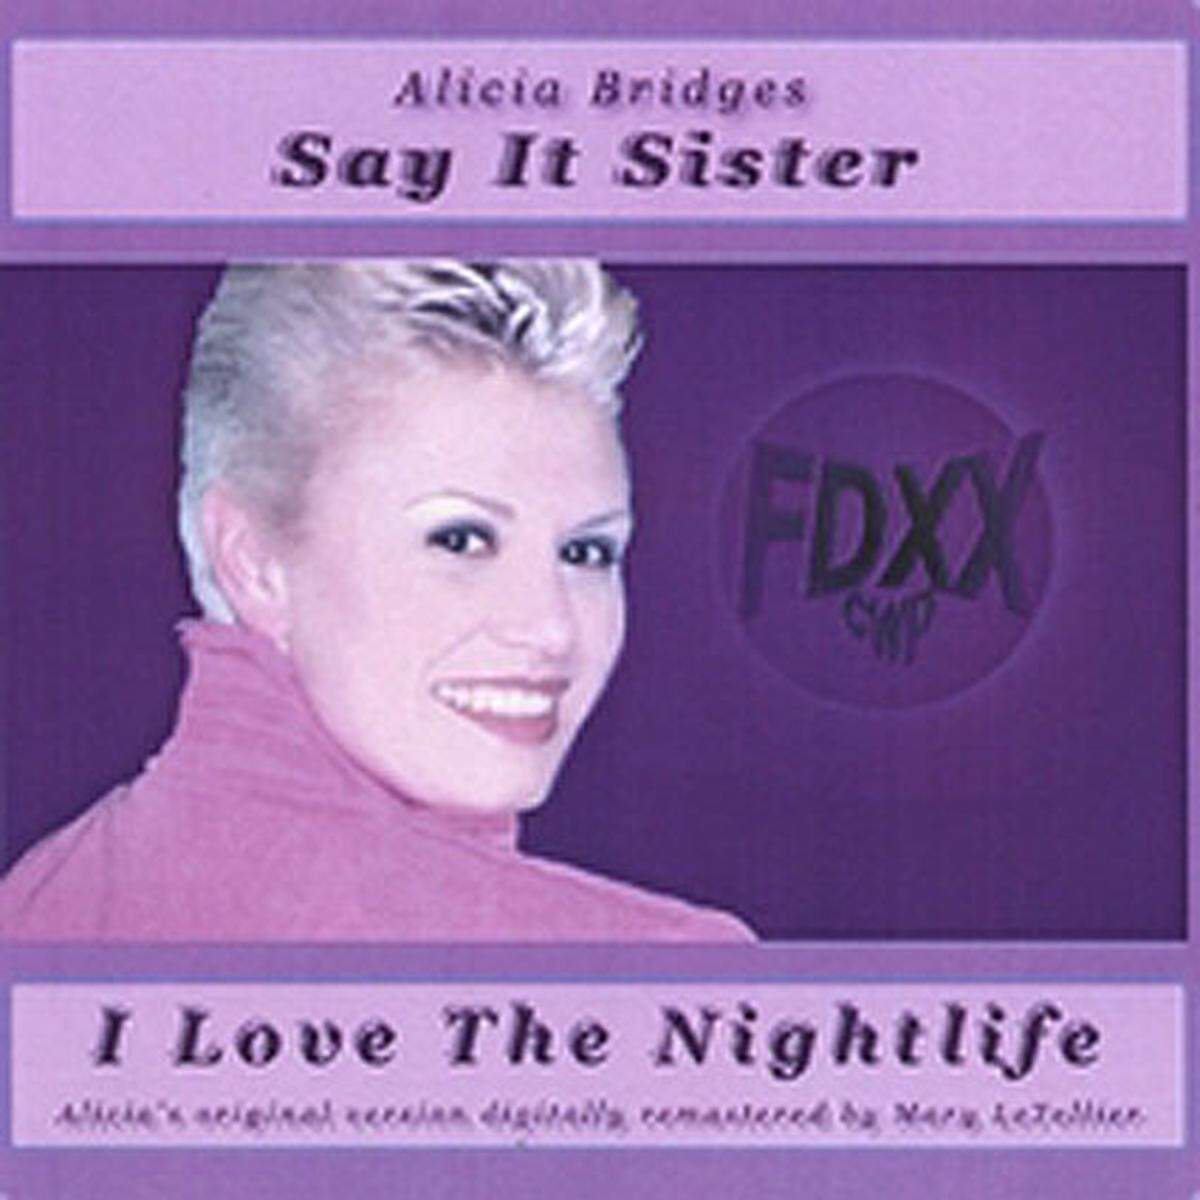 Mit der Nummer "I Love The Nightlife" feierte Alicia Bridges 1978 einen internationalen Hit. Auch heute noch schafft es die bekennende Lesbe unter die Top Ten. Zumindest auf Platz 10 der schwulsten Songs aller Zeiten.